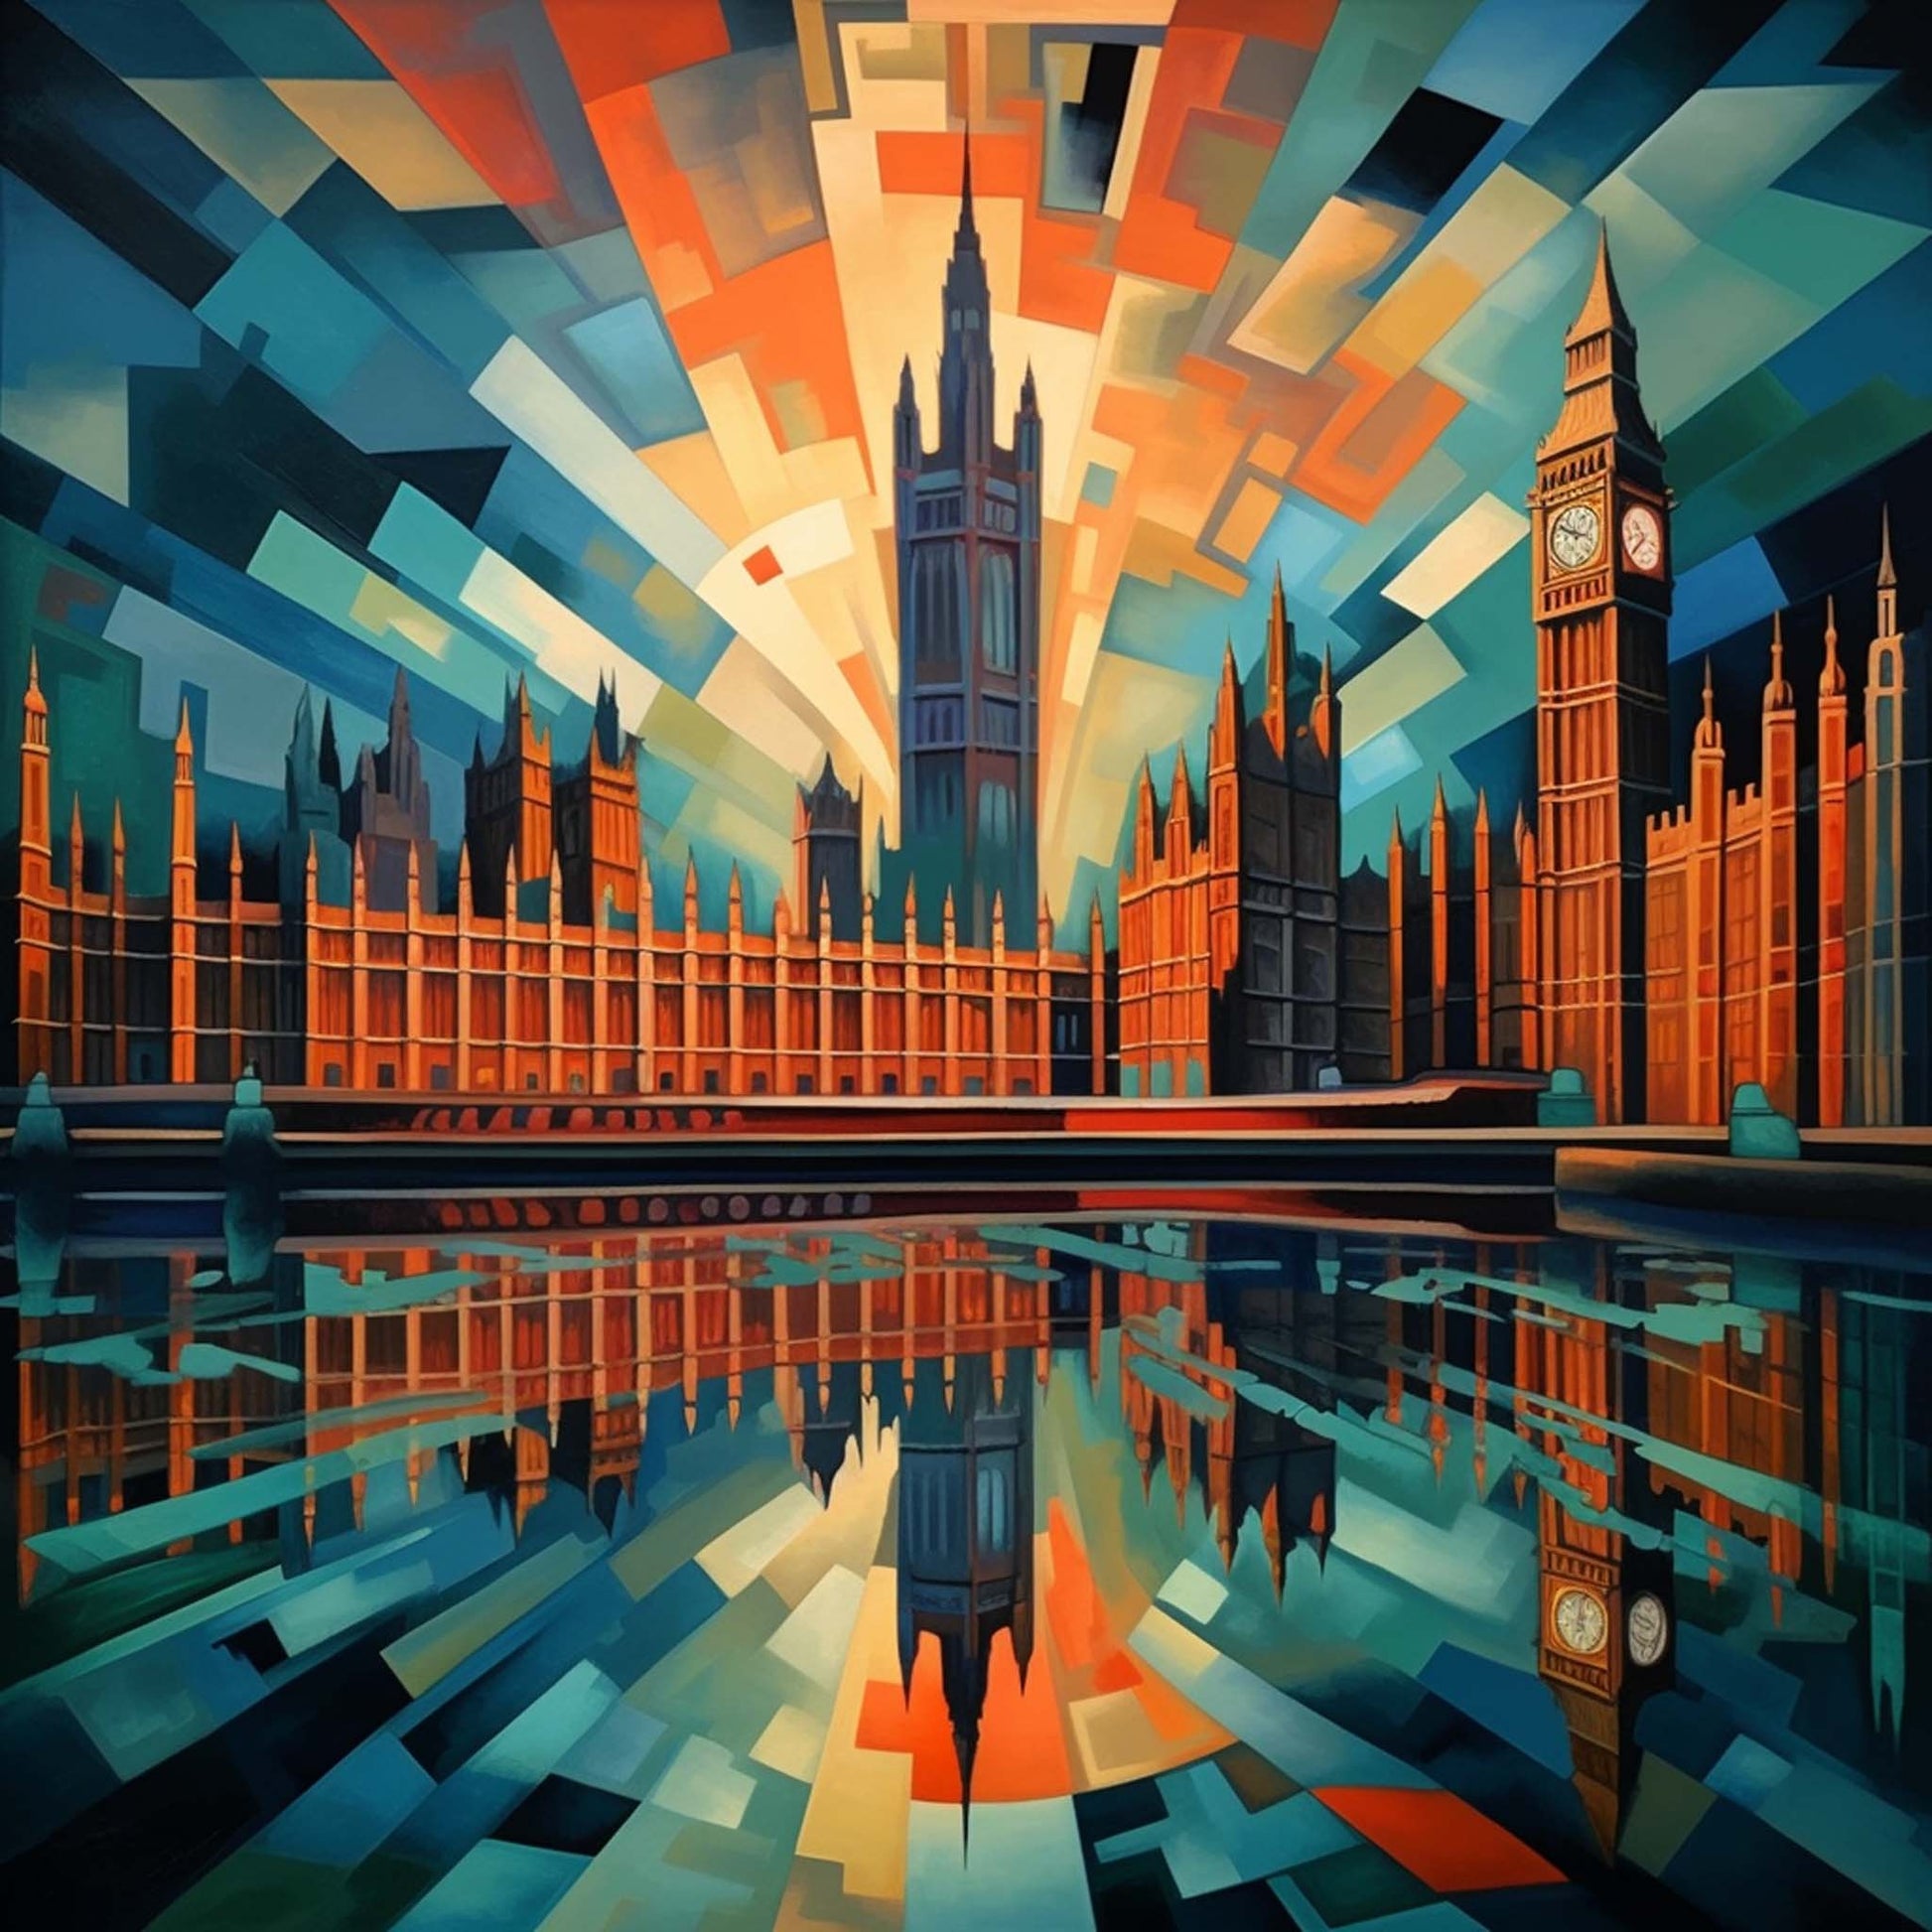 Urbanisto - London Westminster Palace - Wandbild in der Stilrichtung des Futurismus